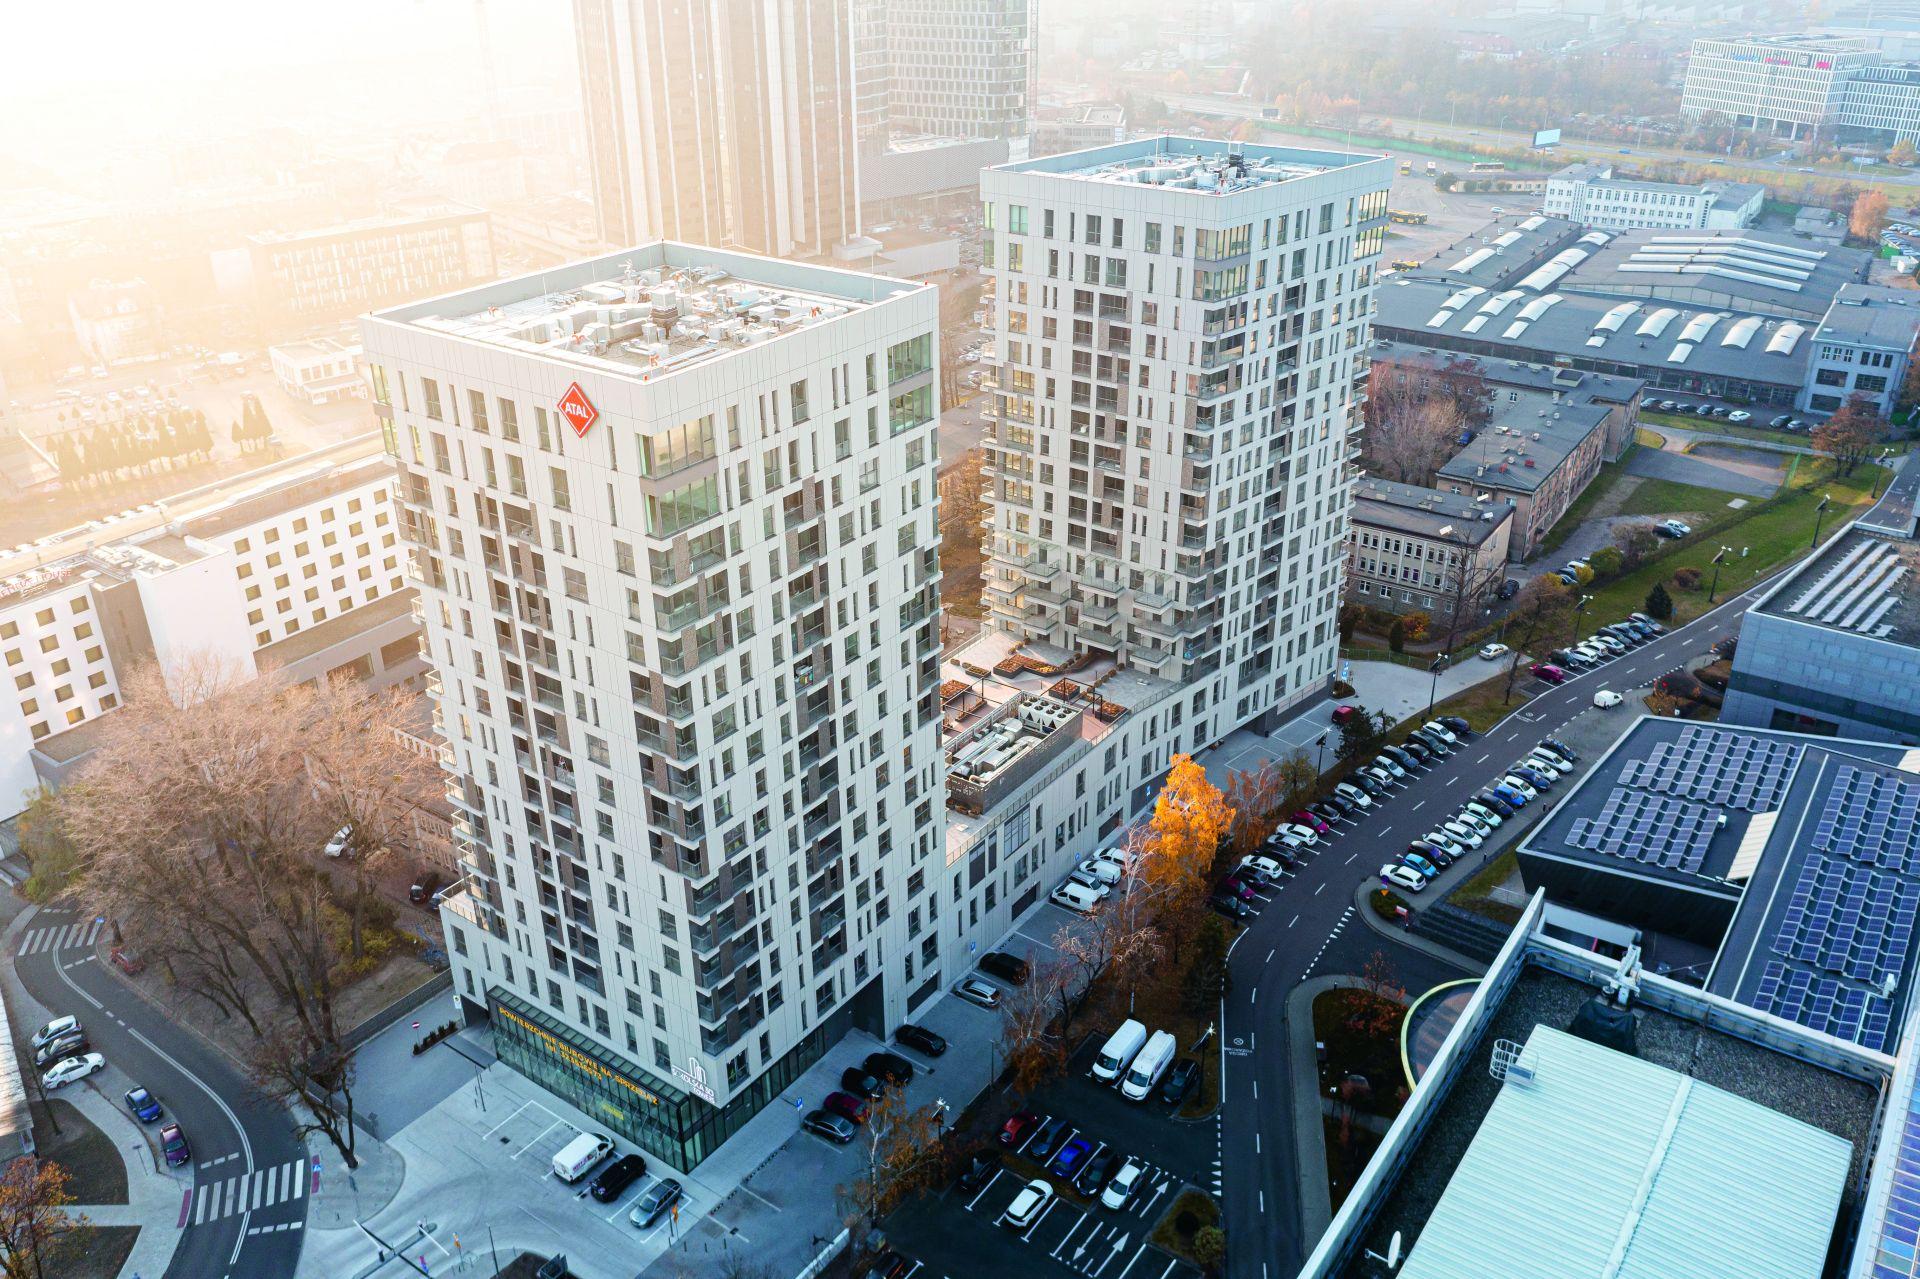 Turnul Sokolska 30 – două turnuri de 17 etaje cu clădiri rezidențiale în Katowice